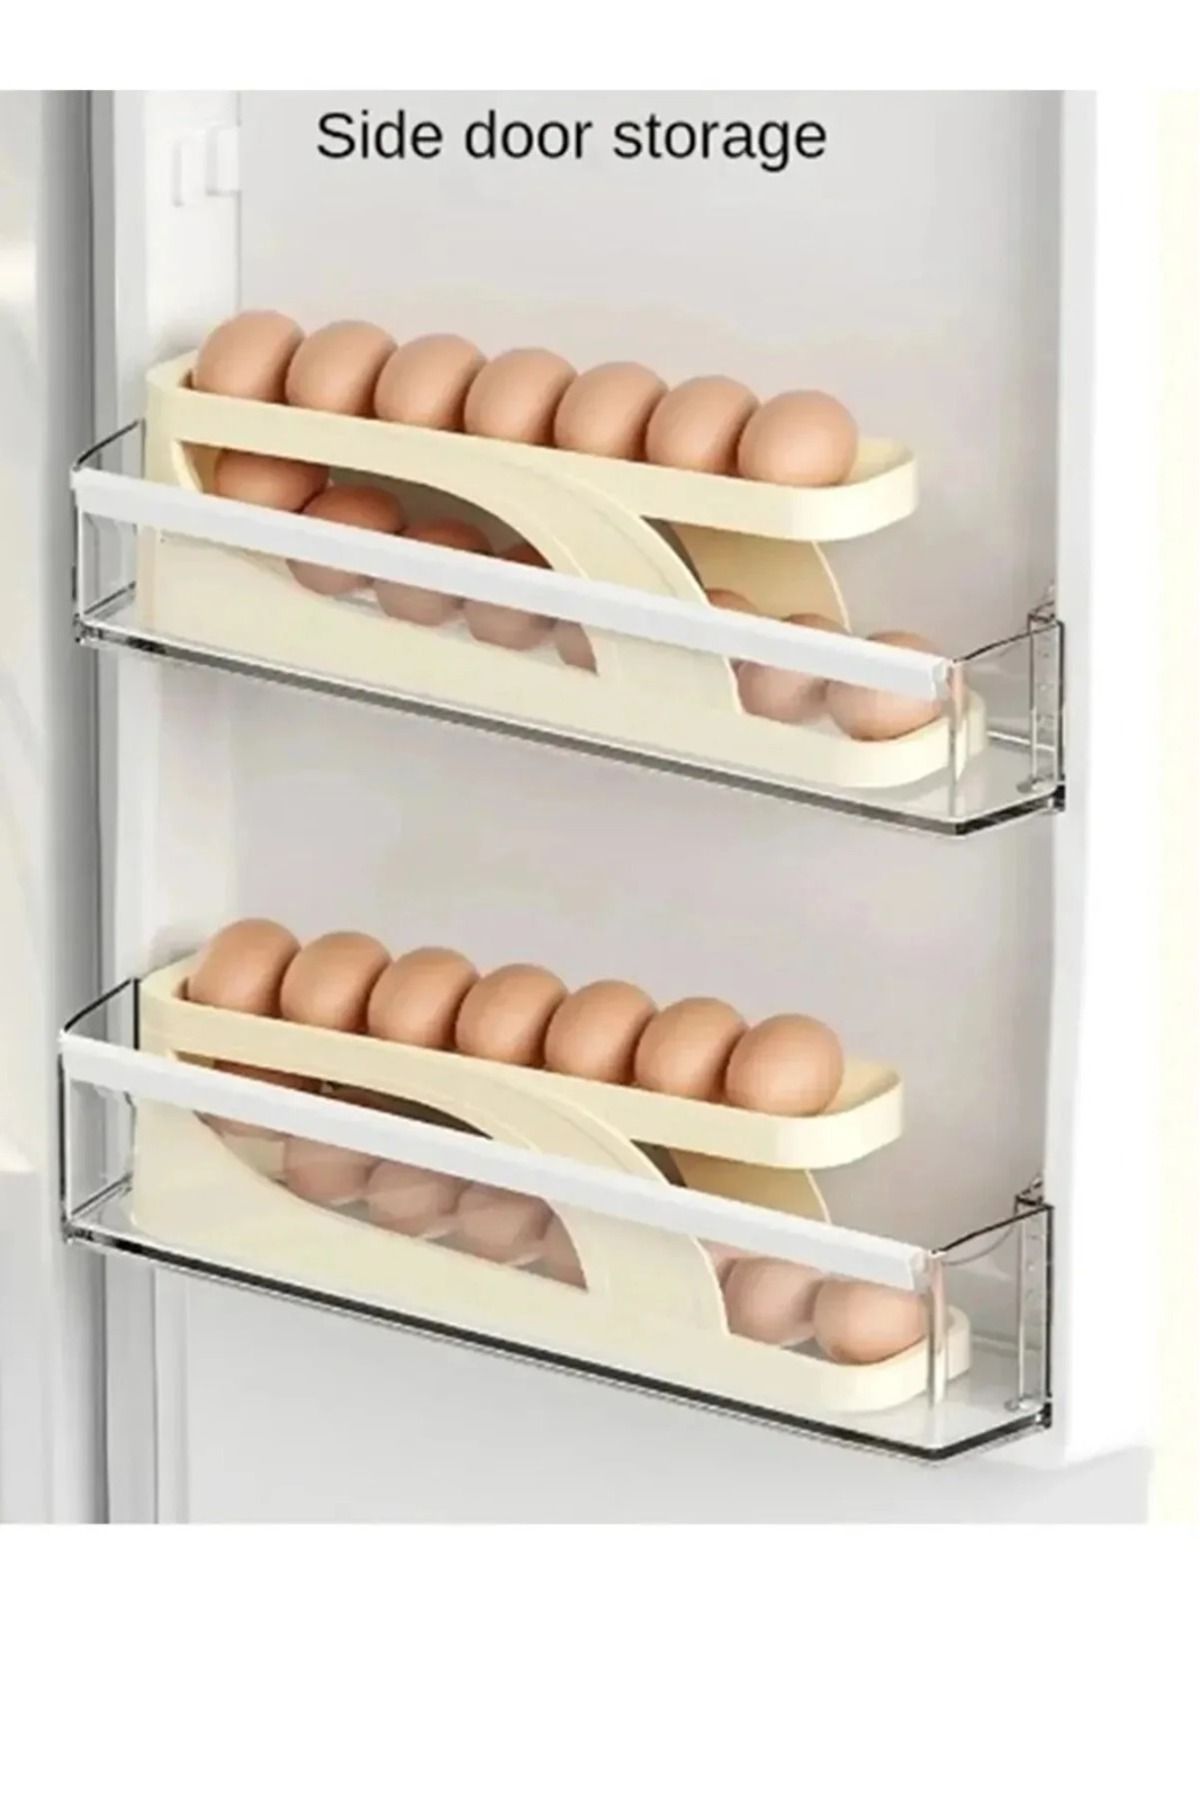 TRUSTMODA Yeni Nesil 2 Katlı Otomatik Buzdolabı Yumurta Organizeri Yumurtalık Rafı Saklama Kabı Buzdolabı